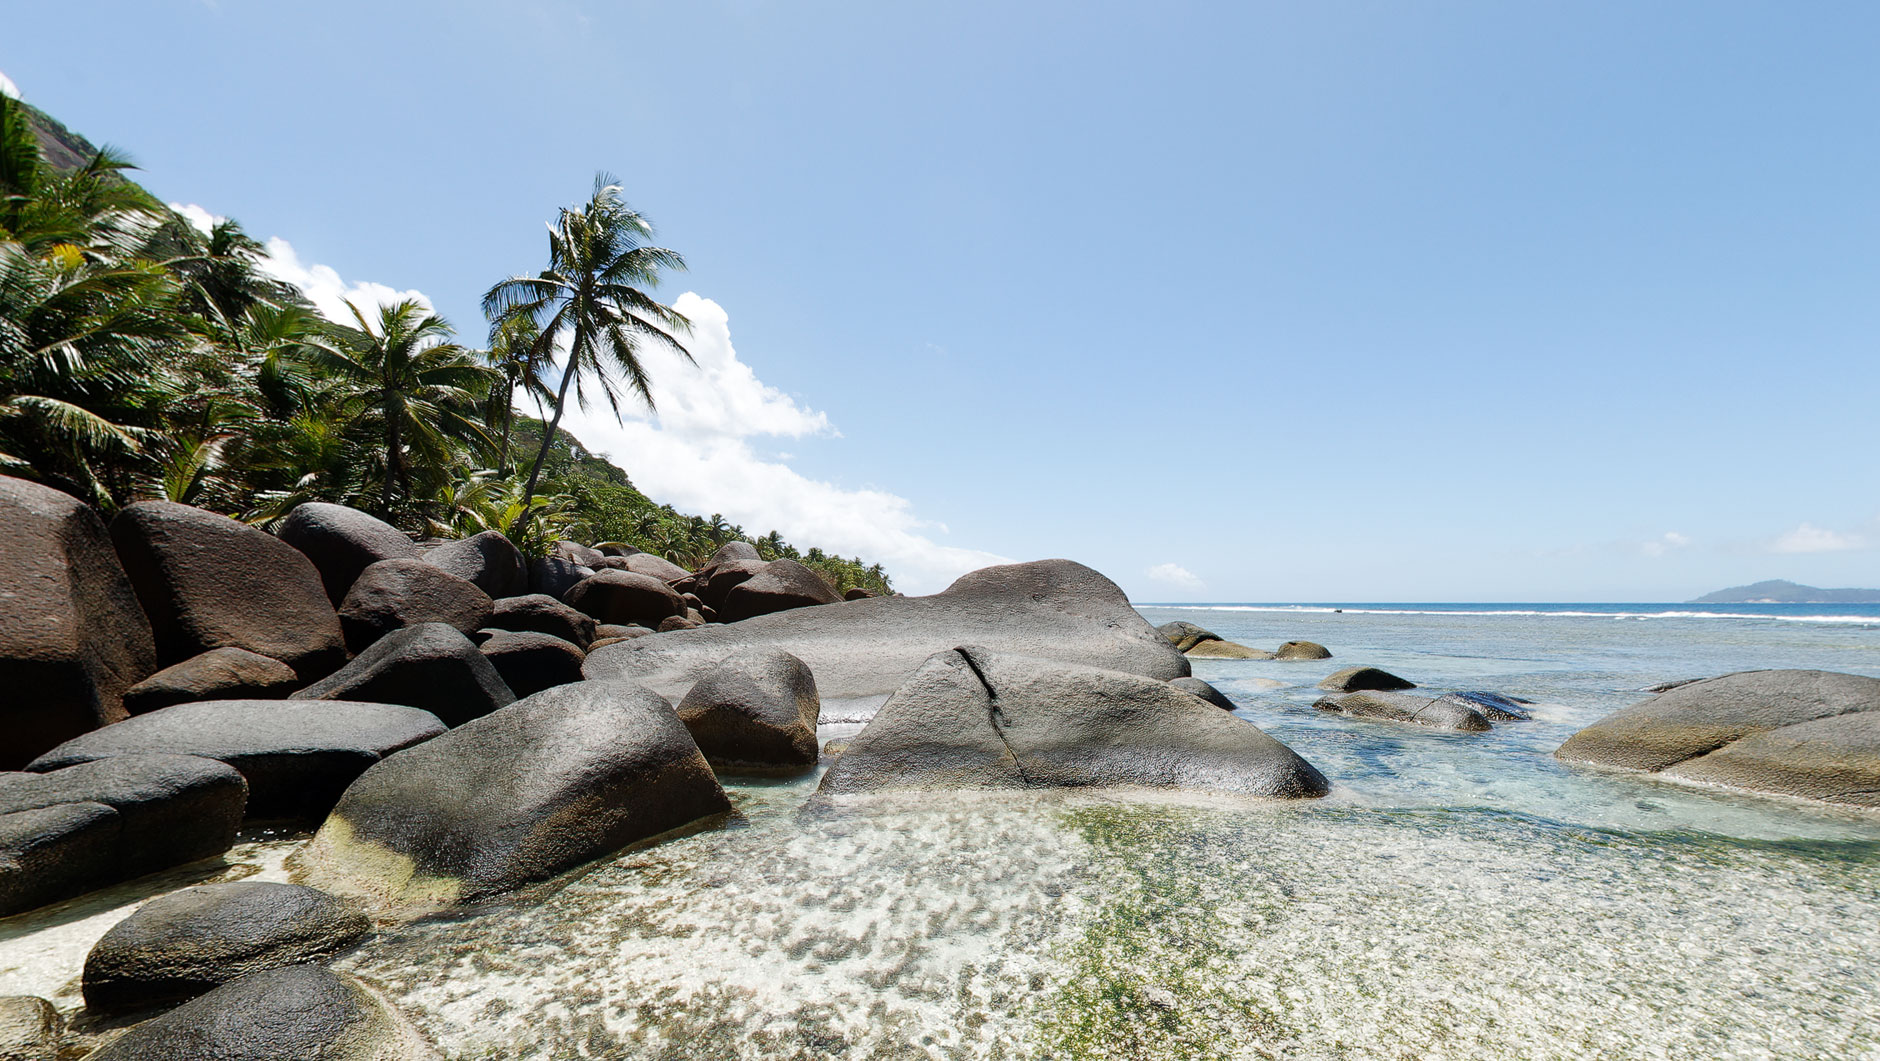 Ein einsamer Strand mit vielen Felsen und Palmen. Weißer Sand an einem Traumstrand auf den Seychellen. Meer und blauer Himmel.